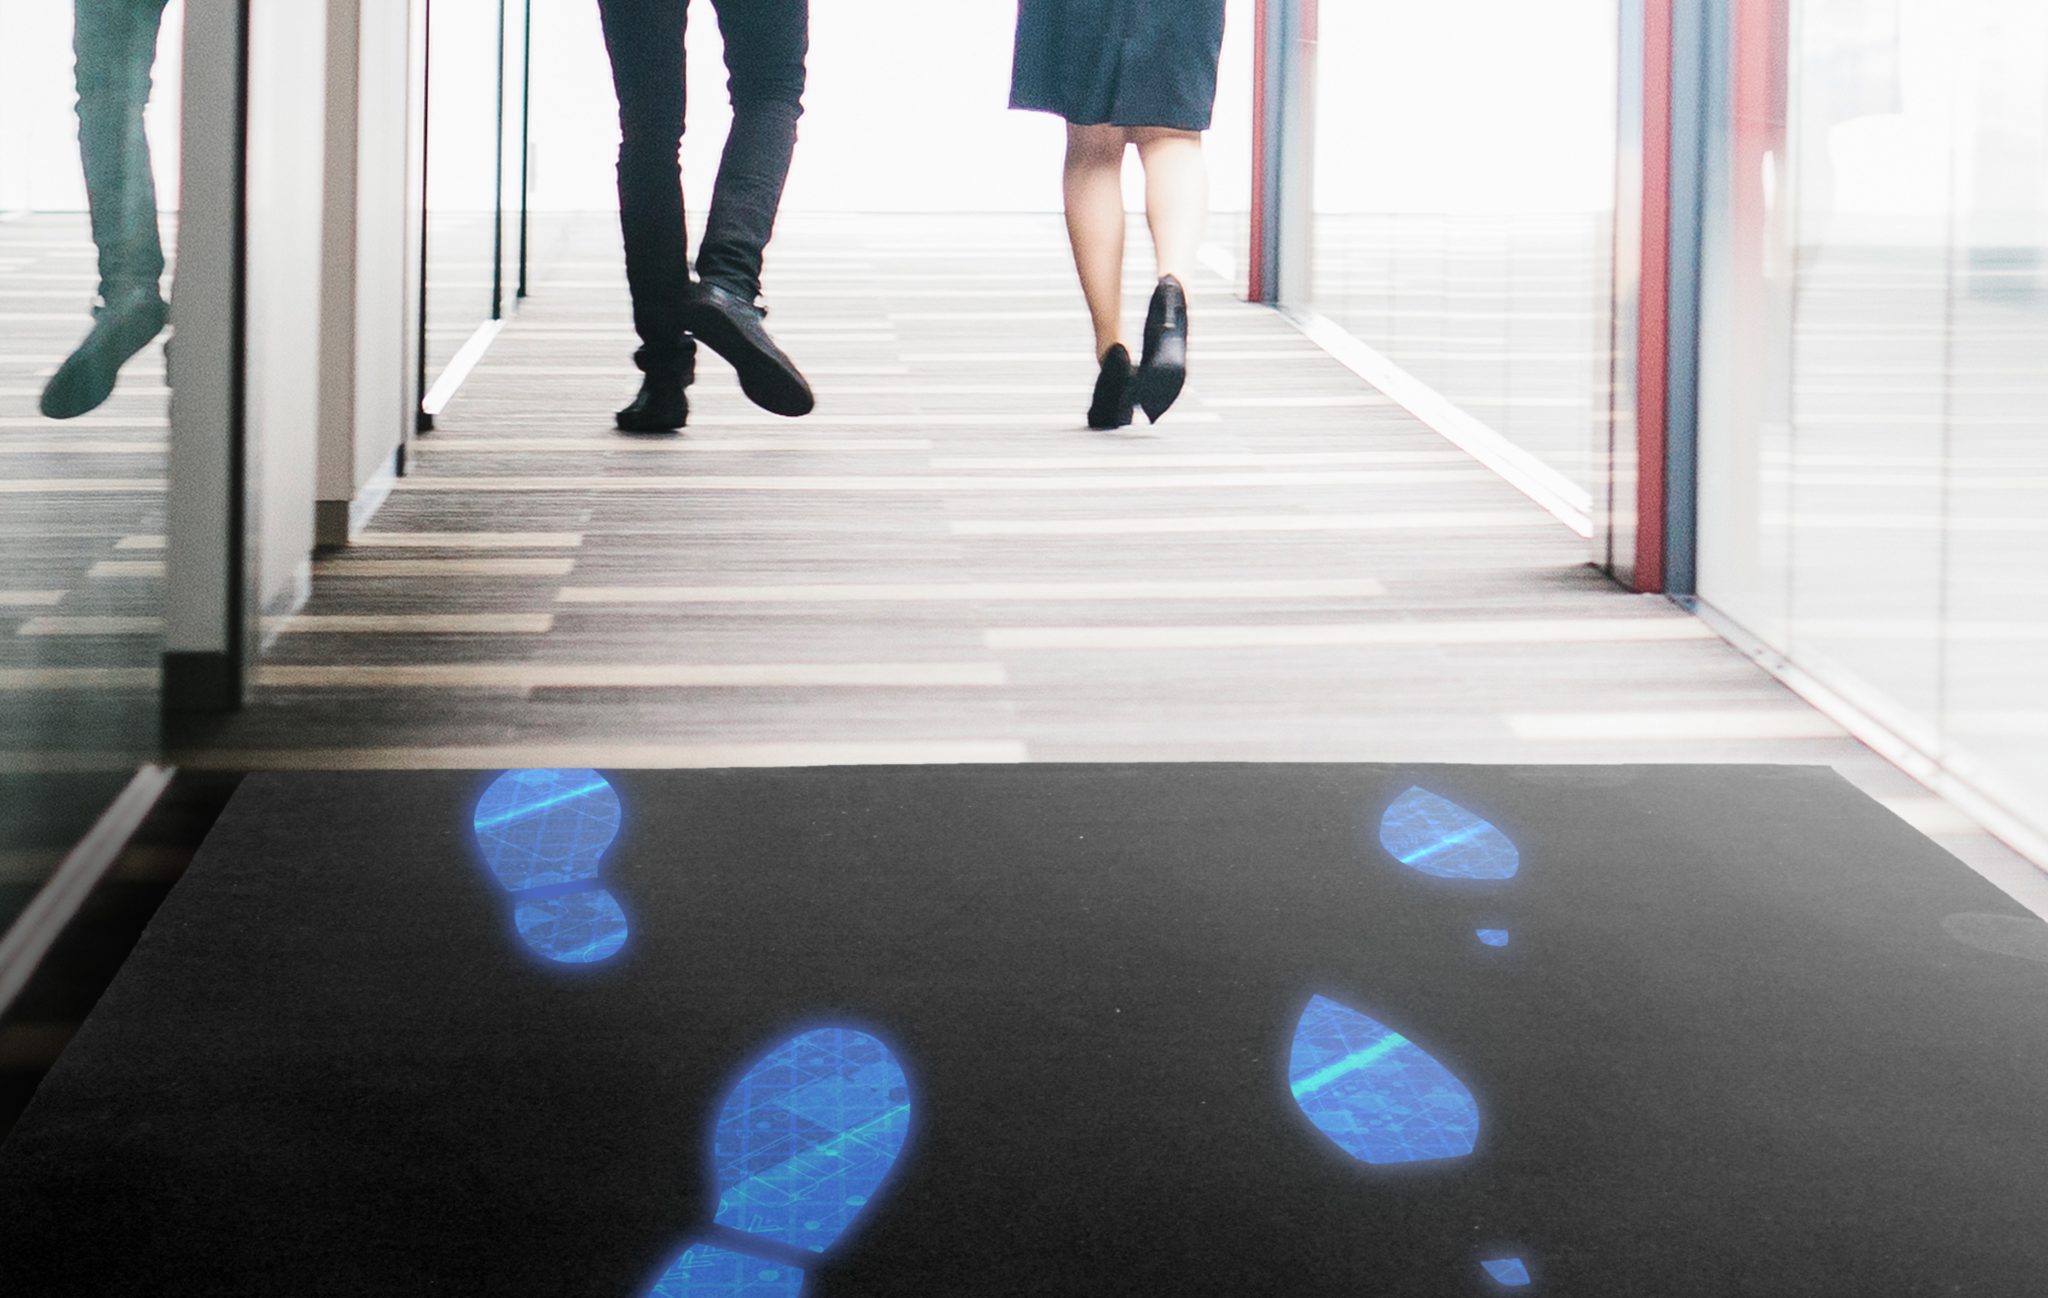 Ein Mann und eine Frau (man sieht nur die Beine) gehen einen Gang entlang. Auf dem schwarzen Teppich leuchten ihre Fussabdrücke blau auf.